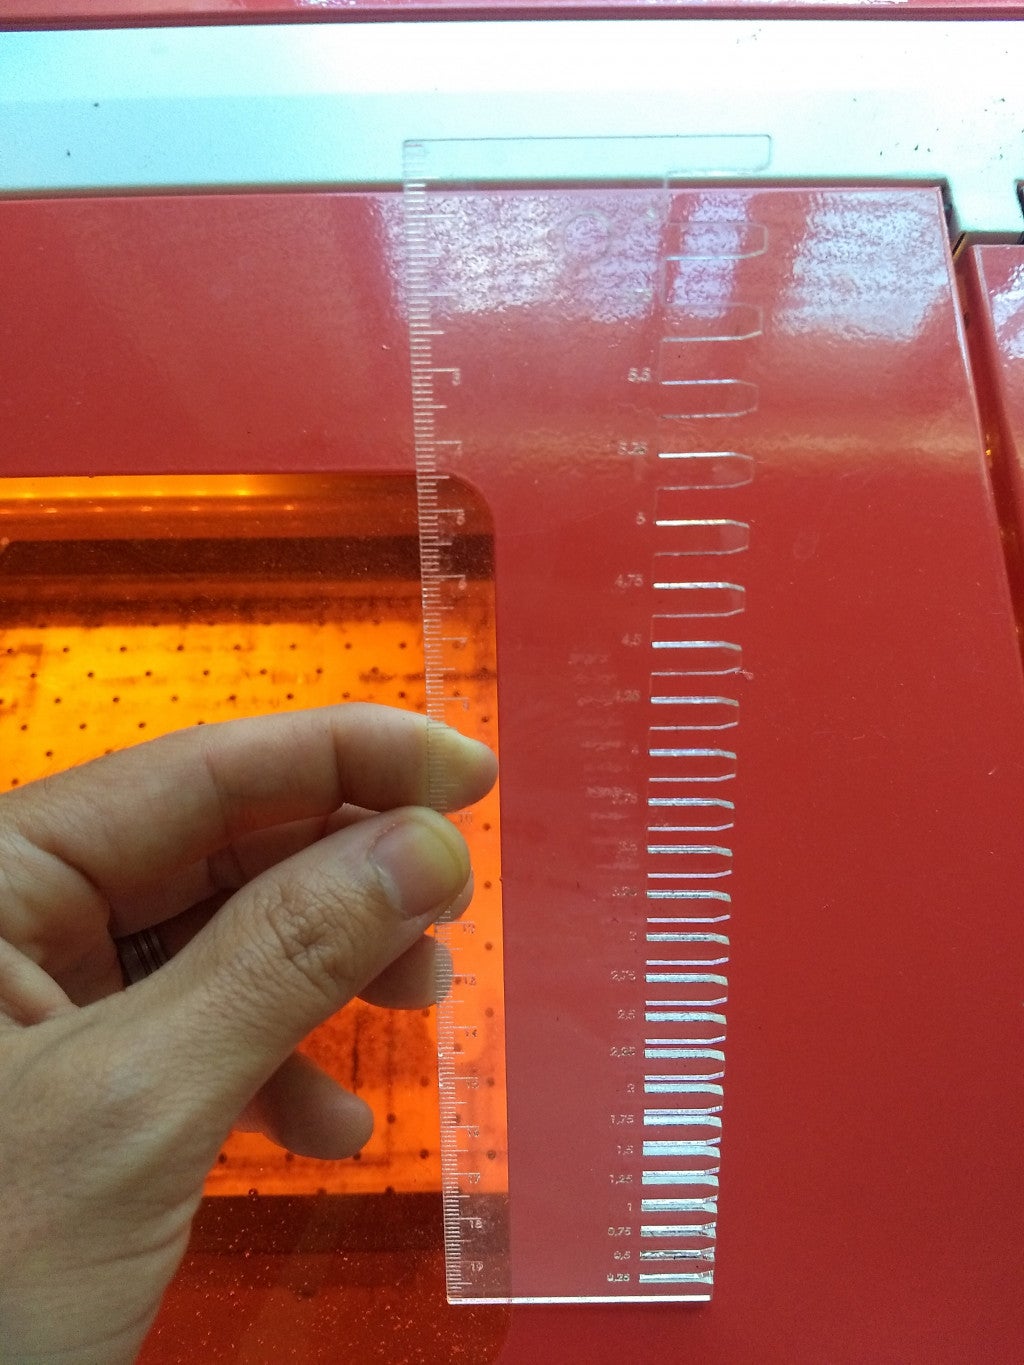 Laserowo wycinana linijka do pomiaru wymiarów i grubości w milimetrach